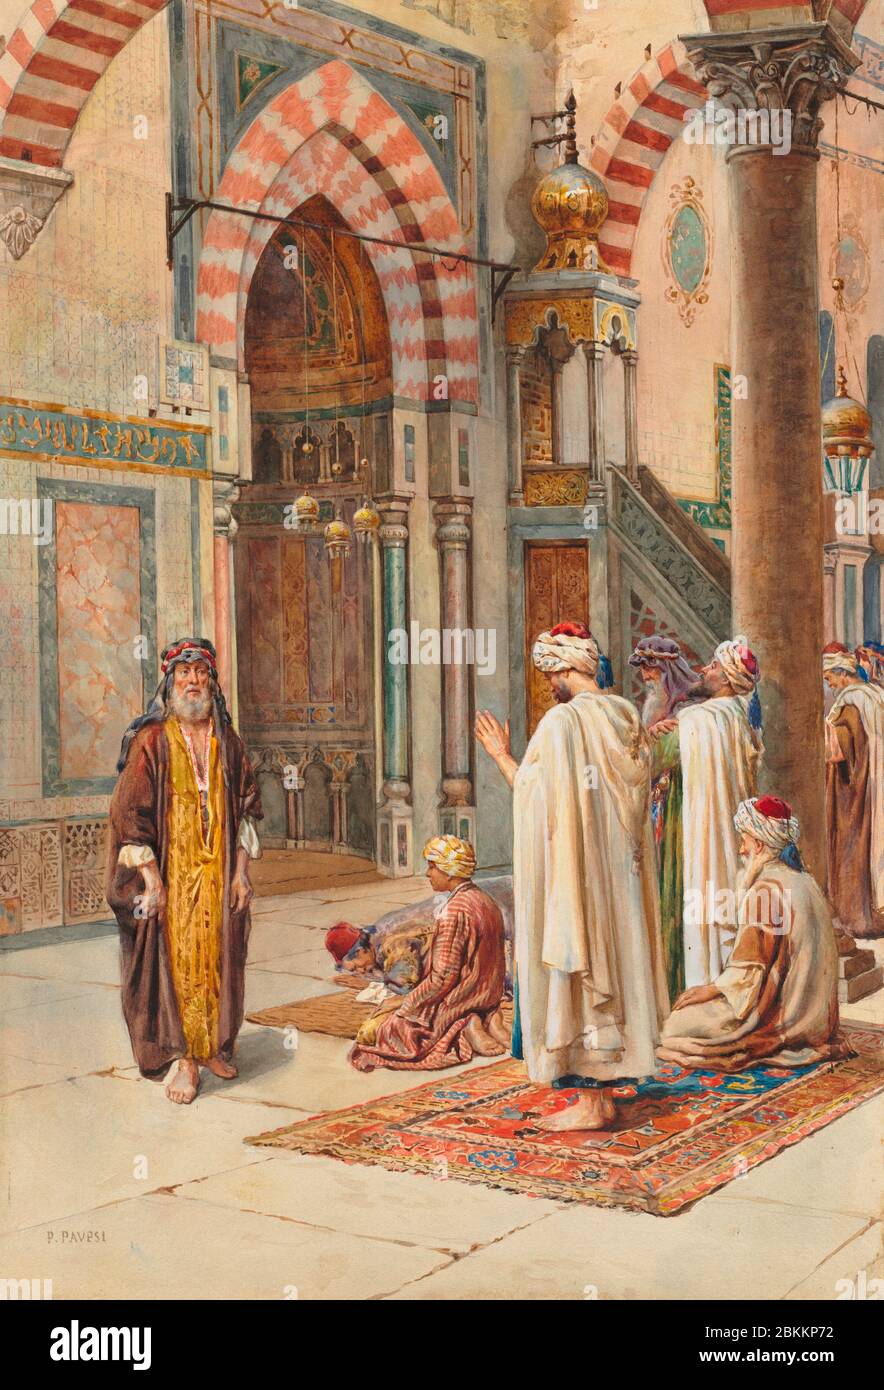 Musulmans à la prière par P. Pavesi, fin du XIXe siècle au début du XXe siècle Banque D'Images